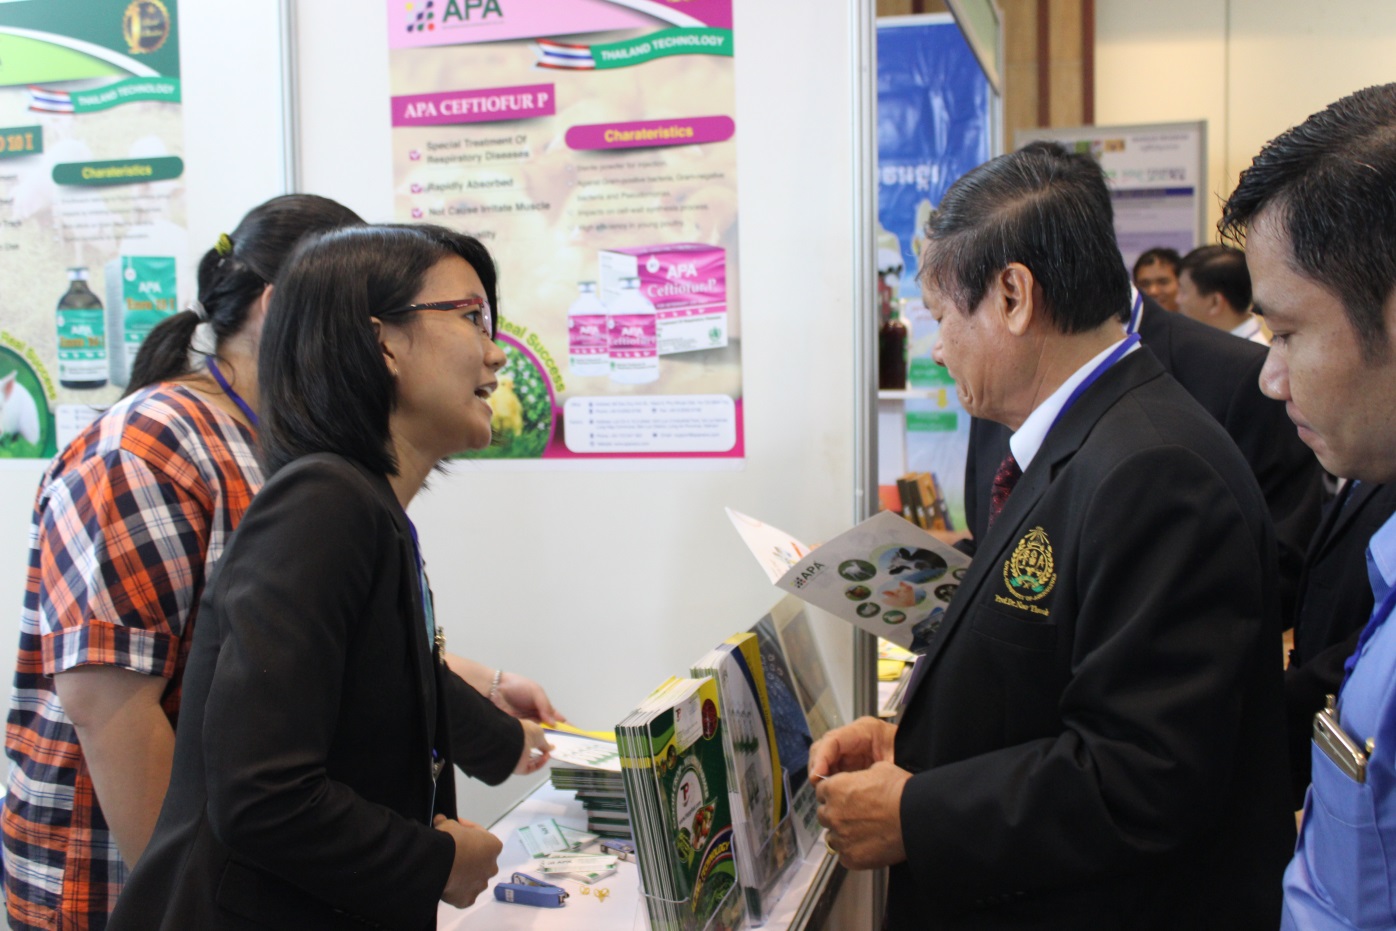 Ngài H.E NaoThouk – Đại diện Bộ Nông Lâm và Ngư nghiệp Campuchia hỏi thăm về các sản phẩm của APA.